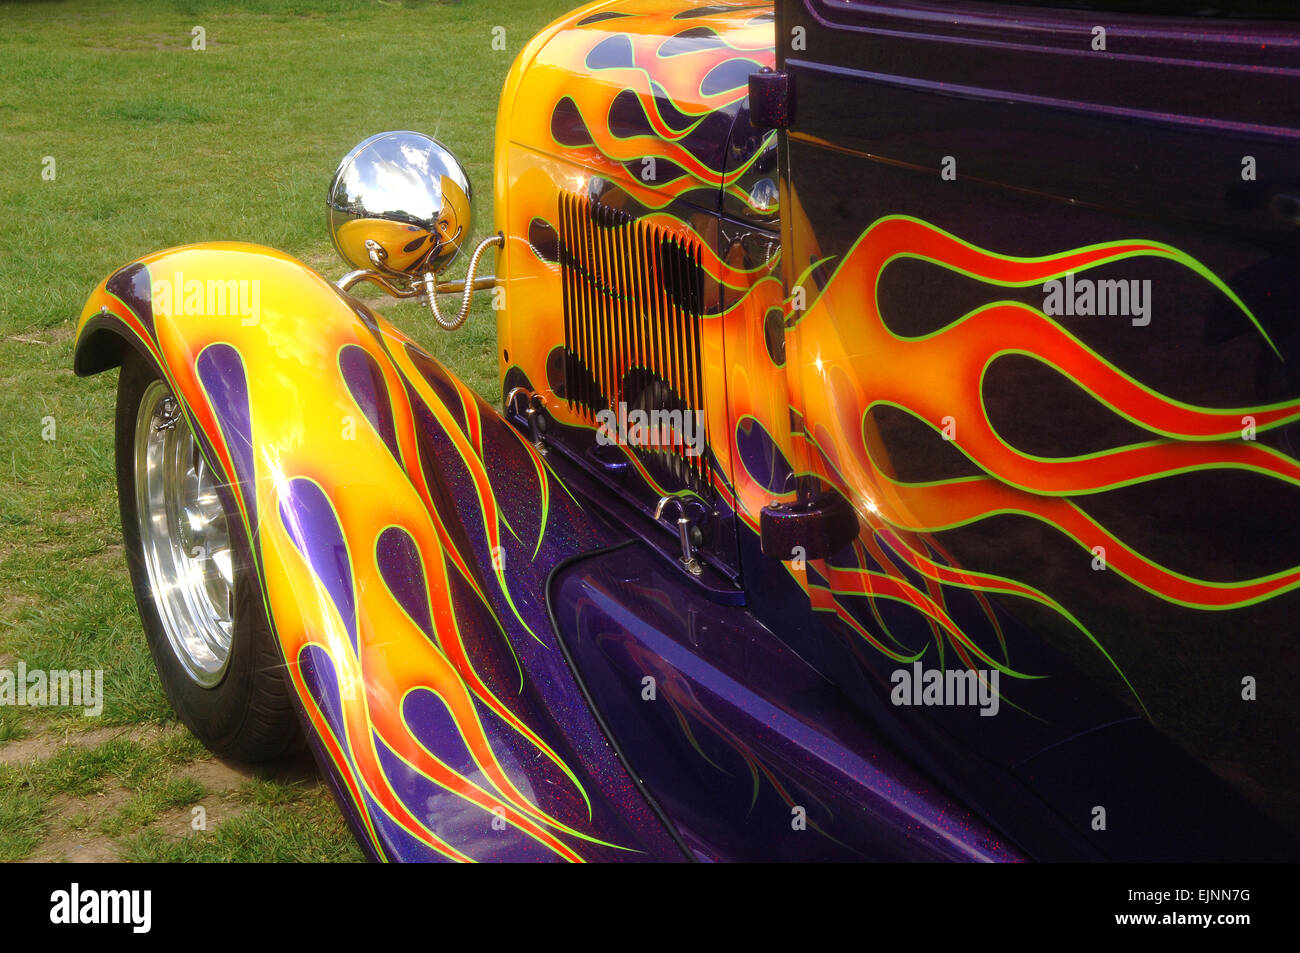 hot rod flames car